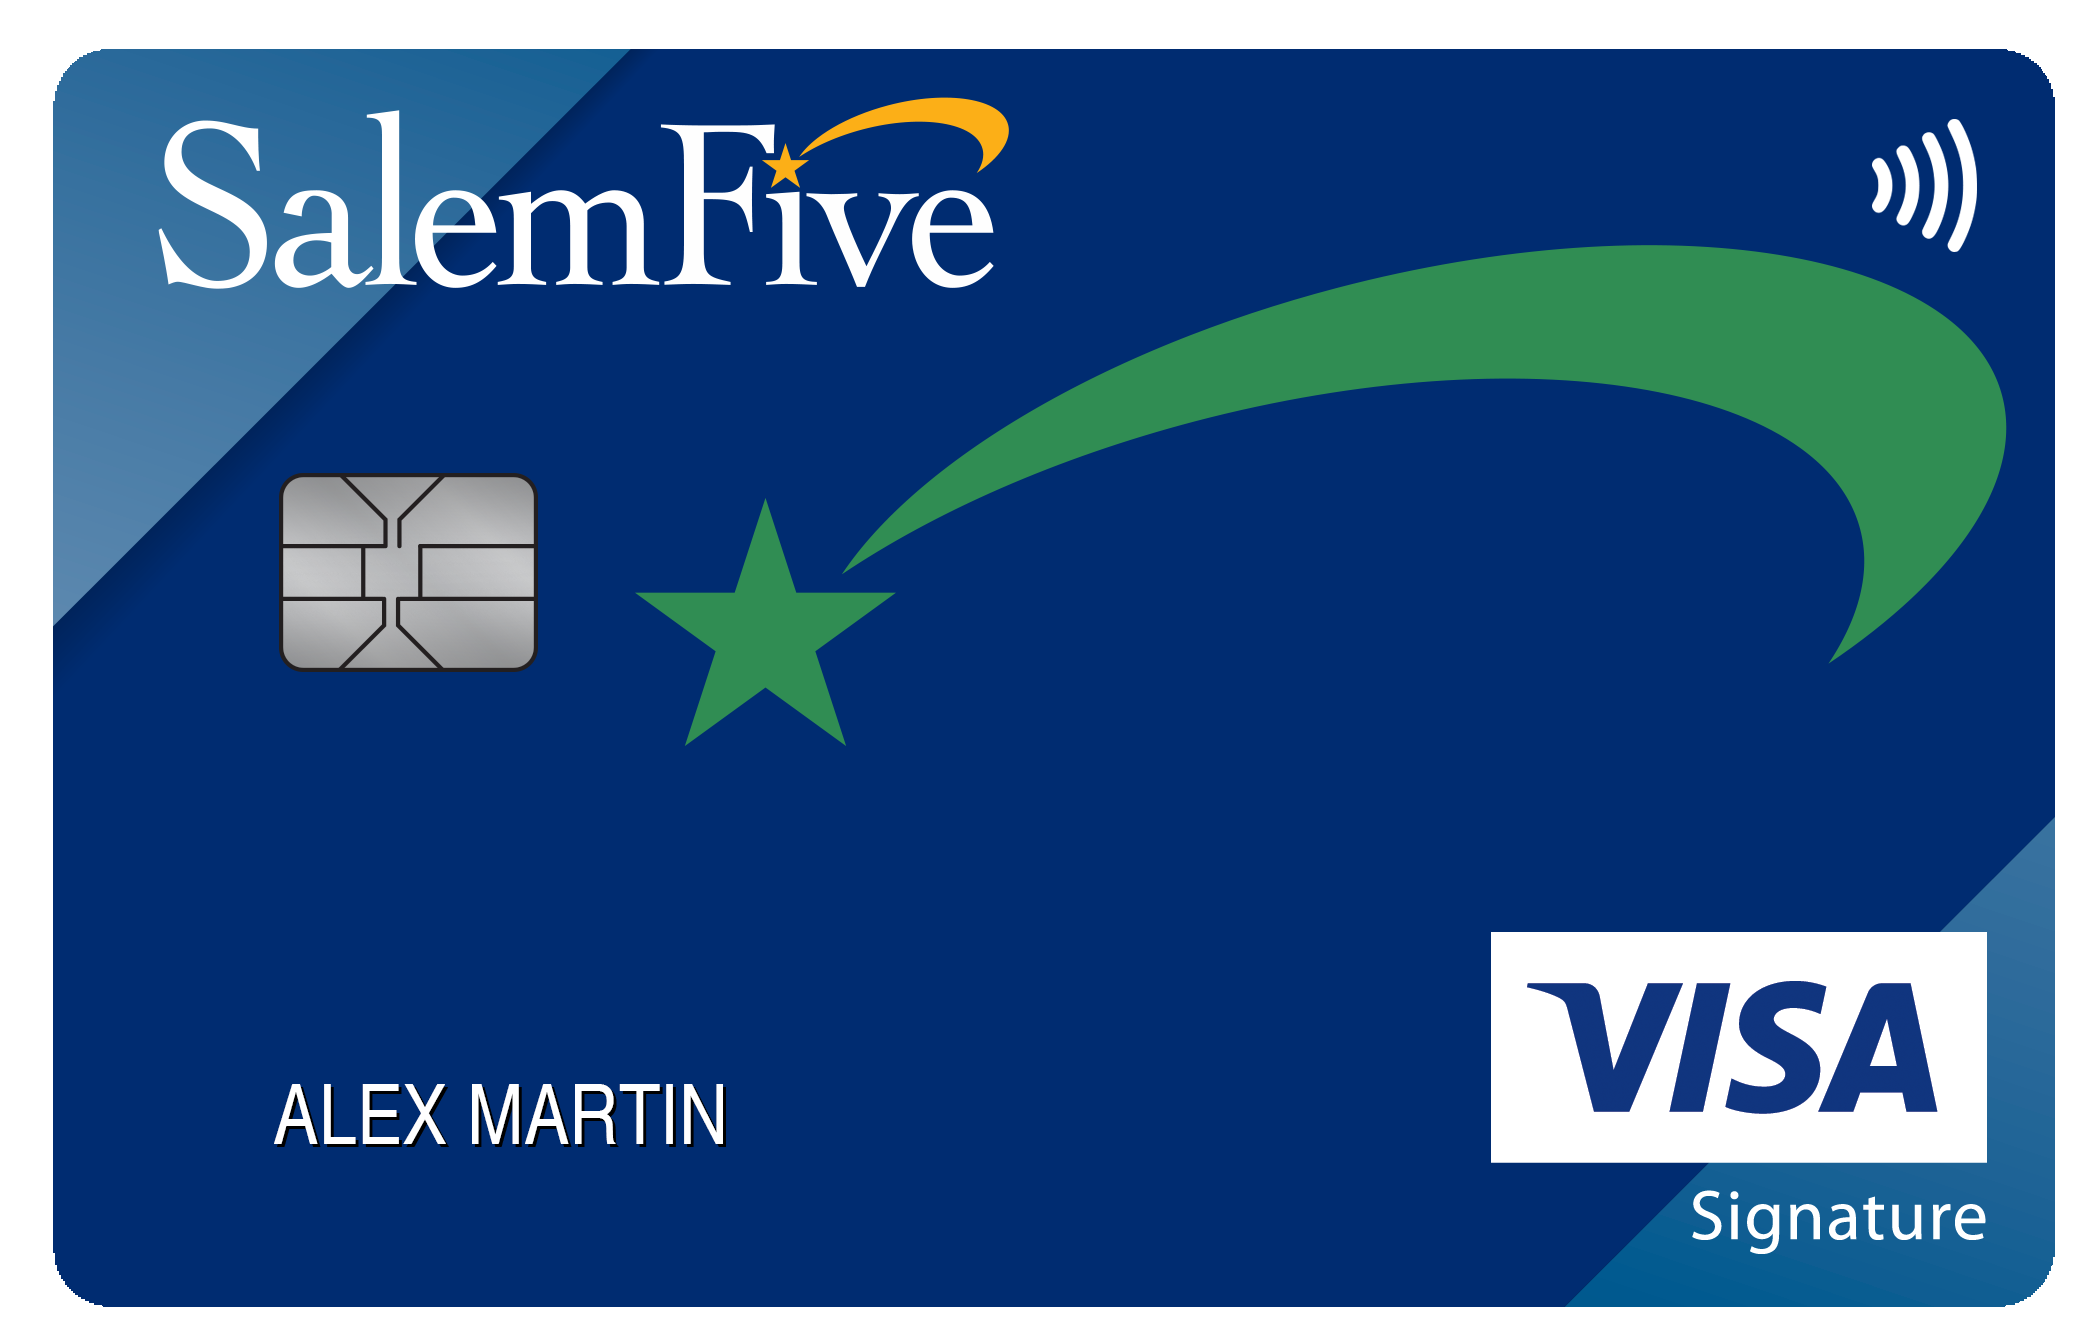 Salem Five Bank Travel Rewards+ Card